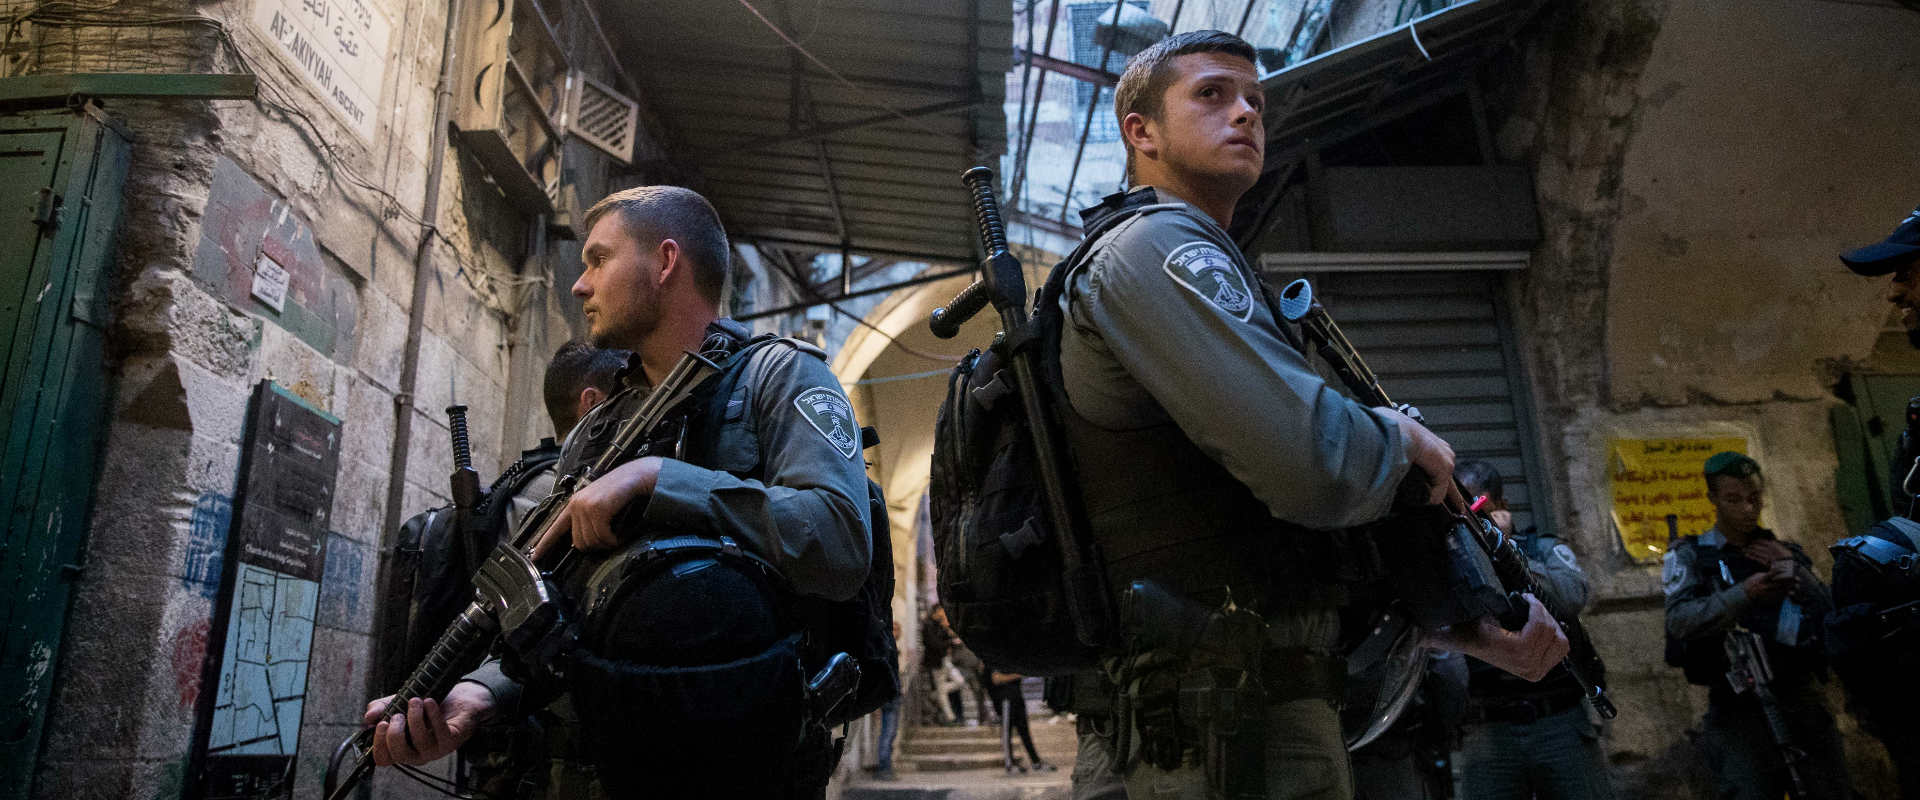 שוטרי מג"ב במזרח ירושלים